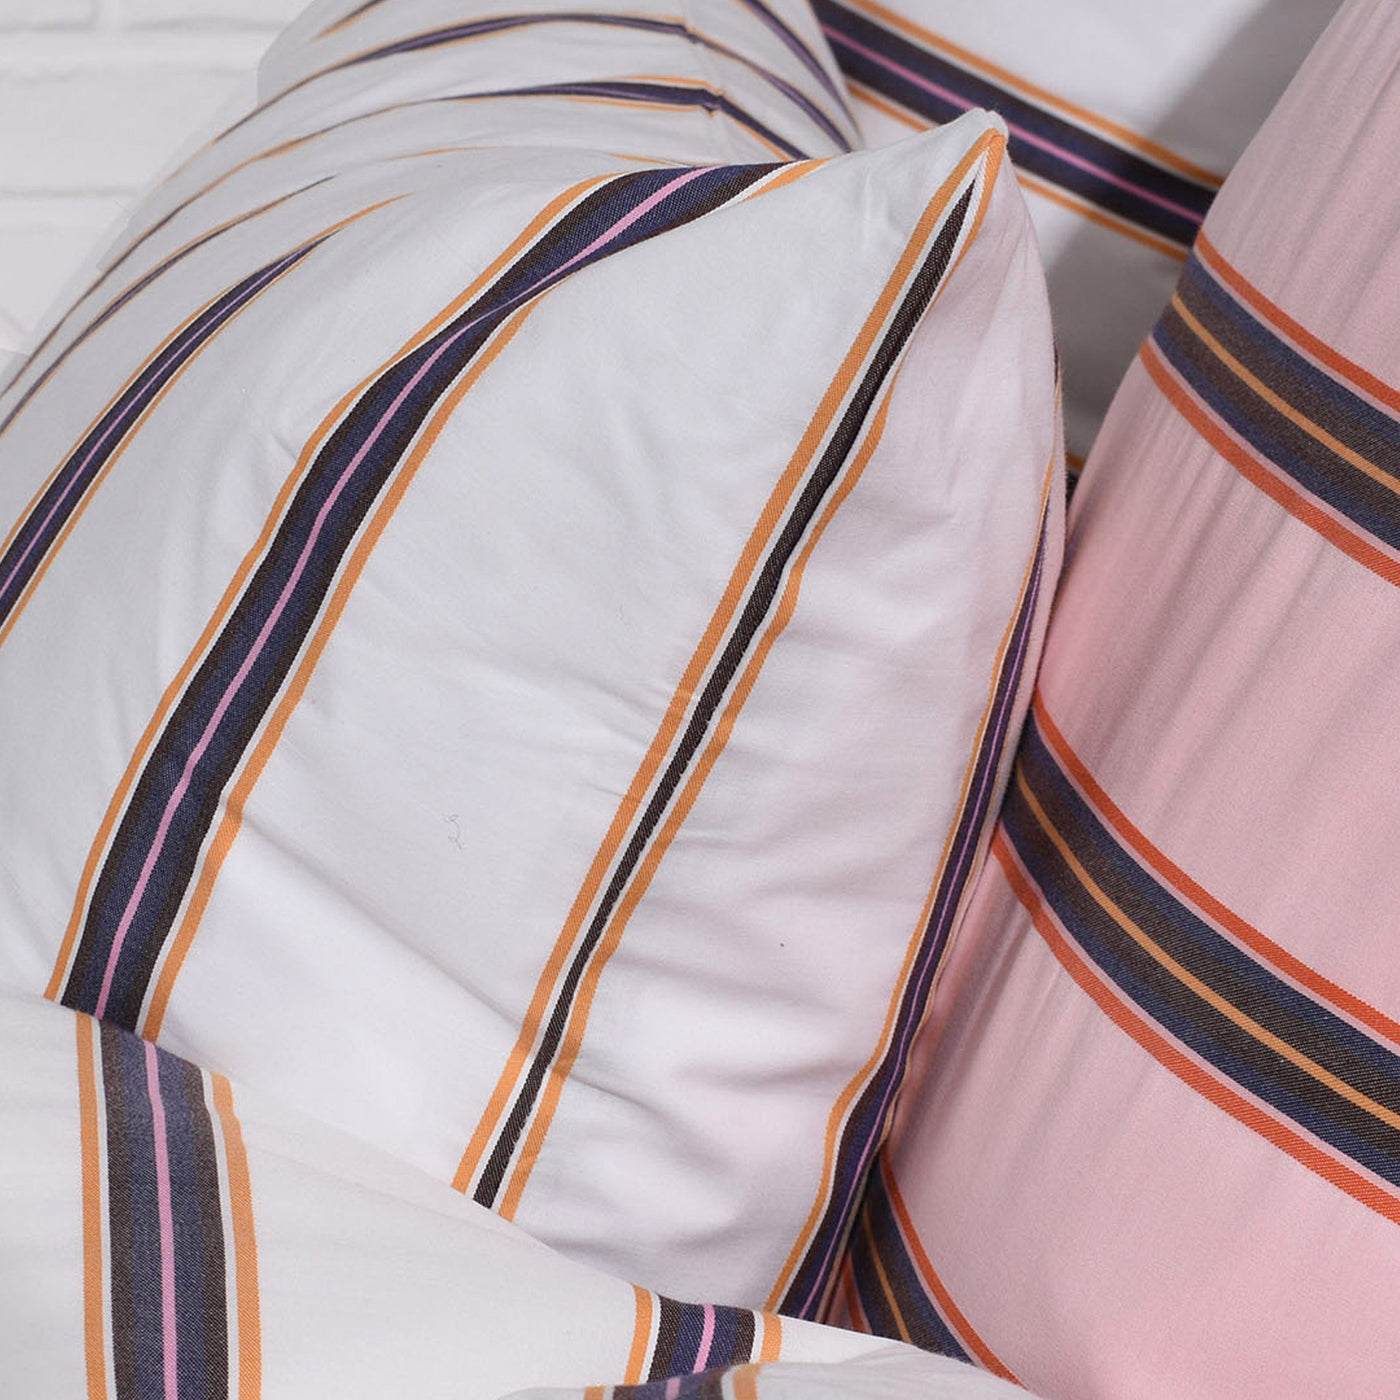 BOMULDSPERCALE Stribet sengetøj Cream dobby stripe